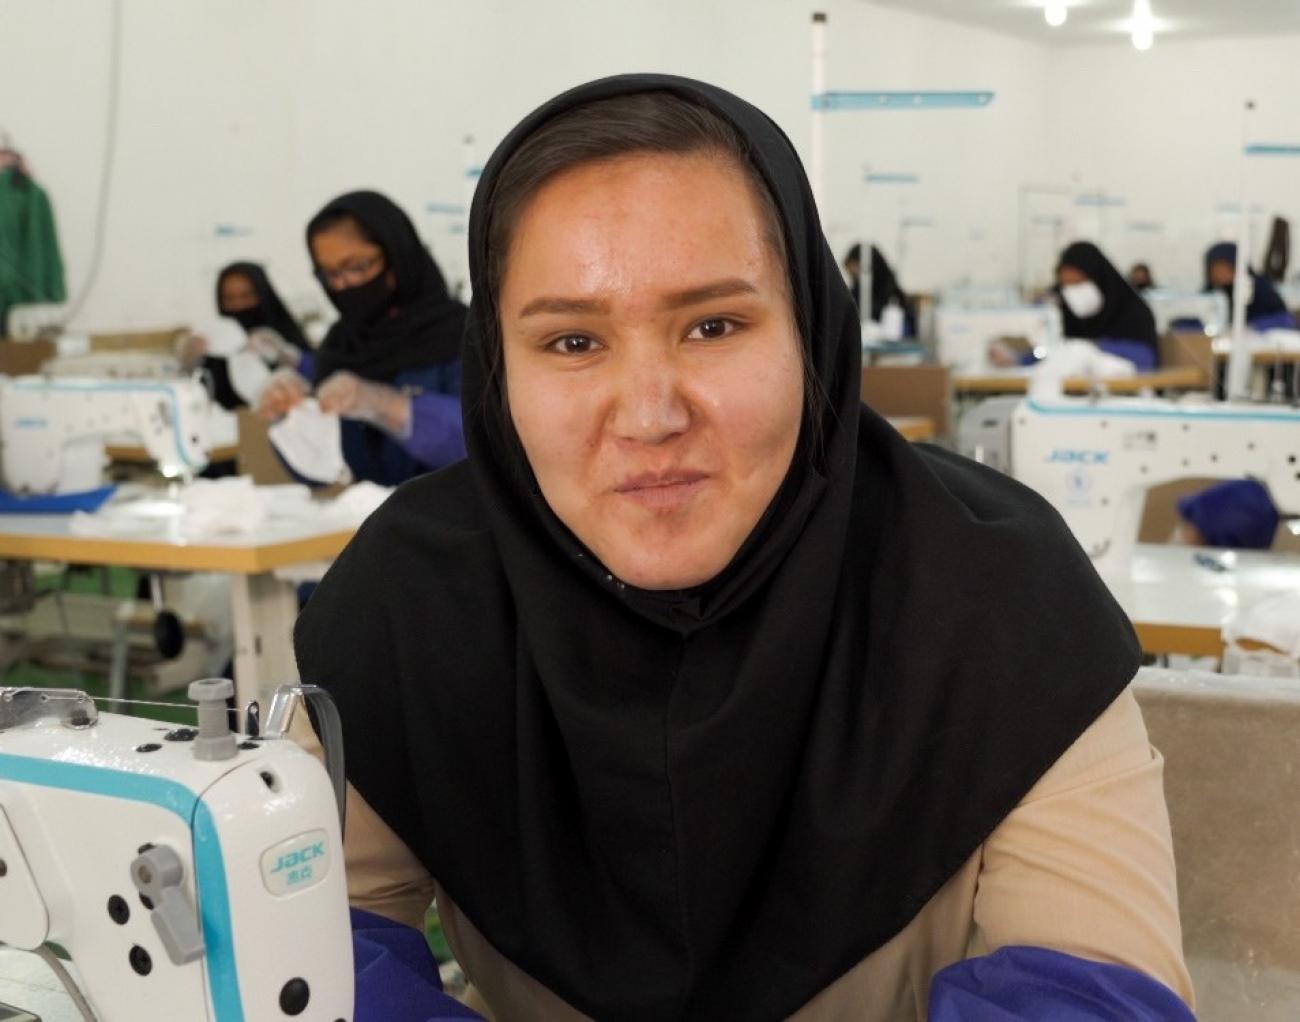 Фото девушки в комнате, полной женщин, работающих за швейными машинками. 